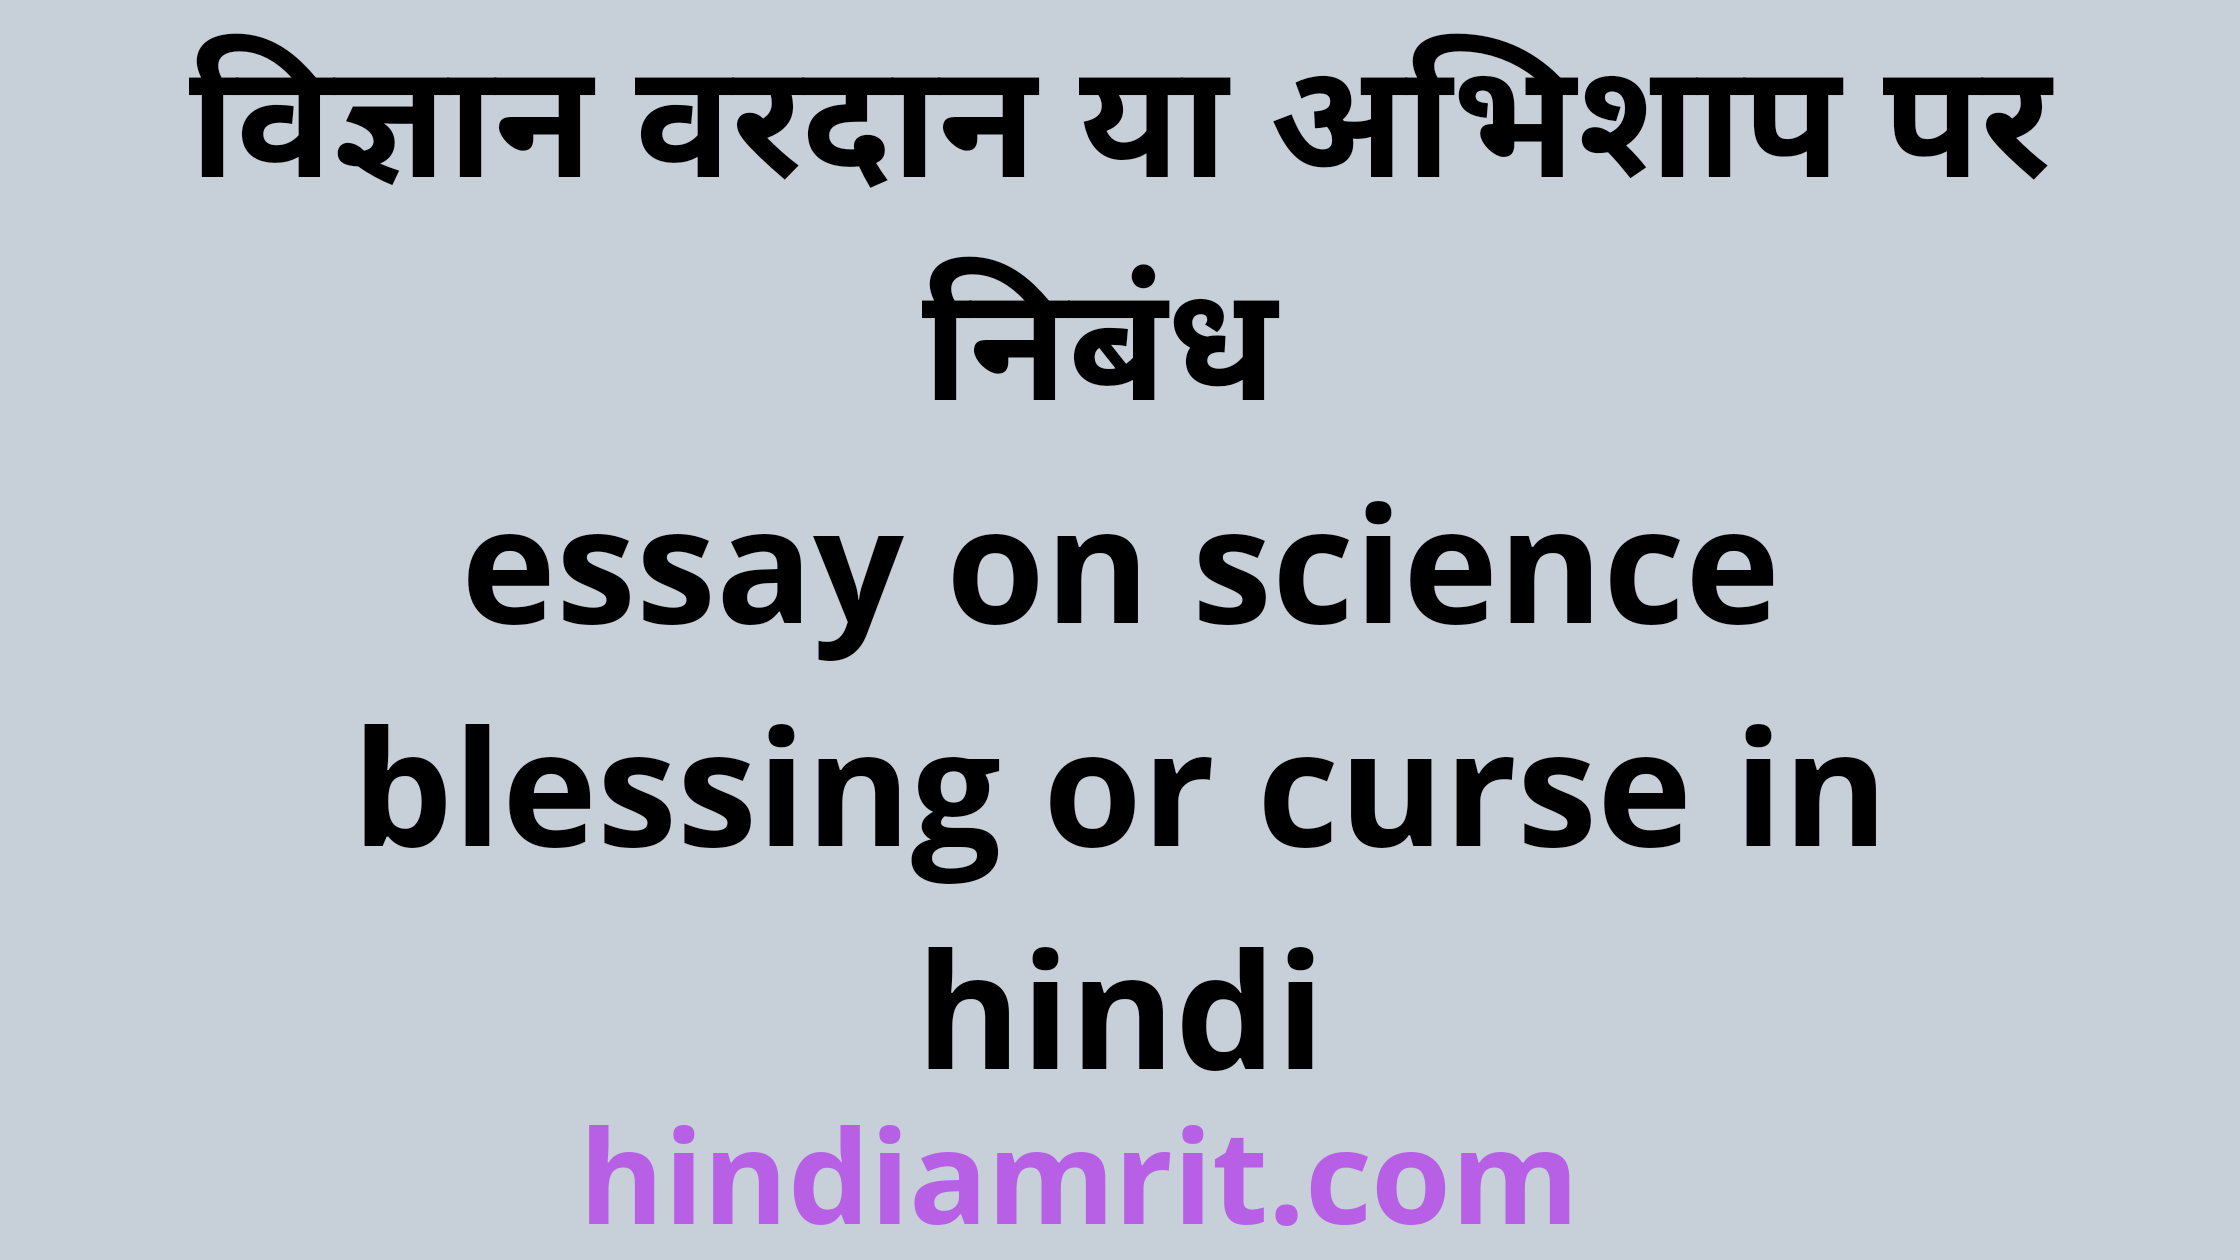 social media vardan ya abhishap essay in hindi